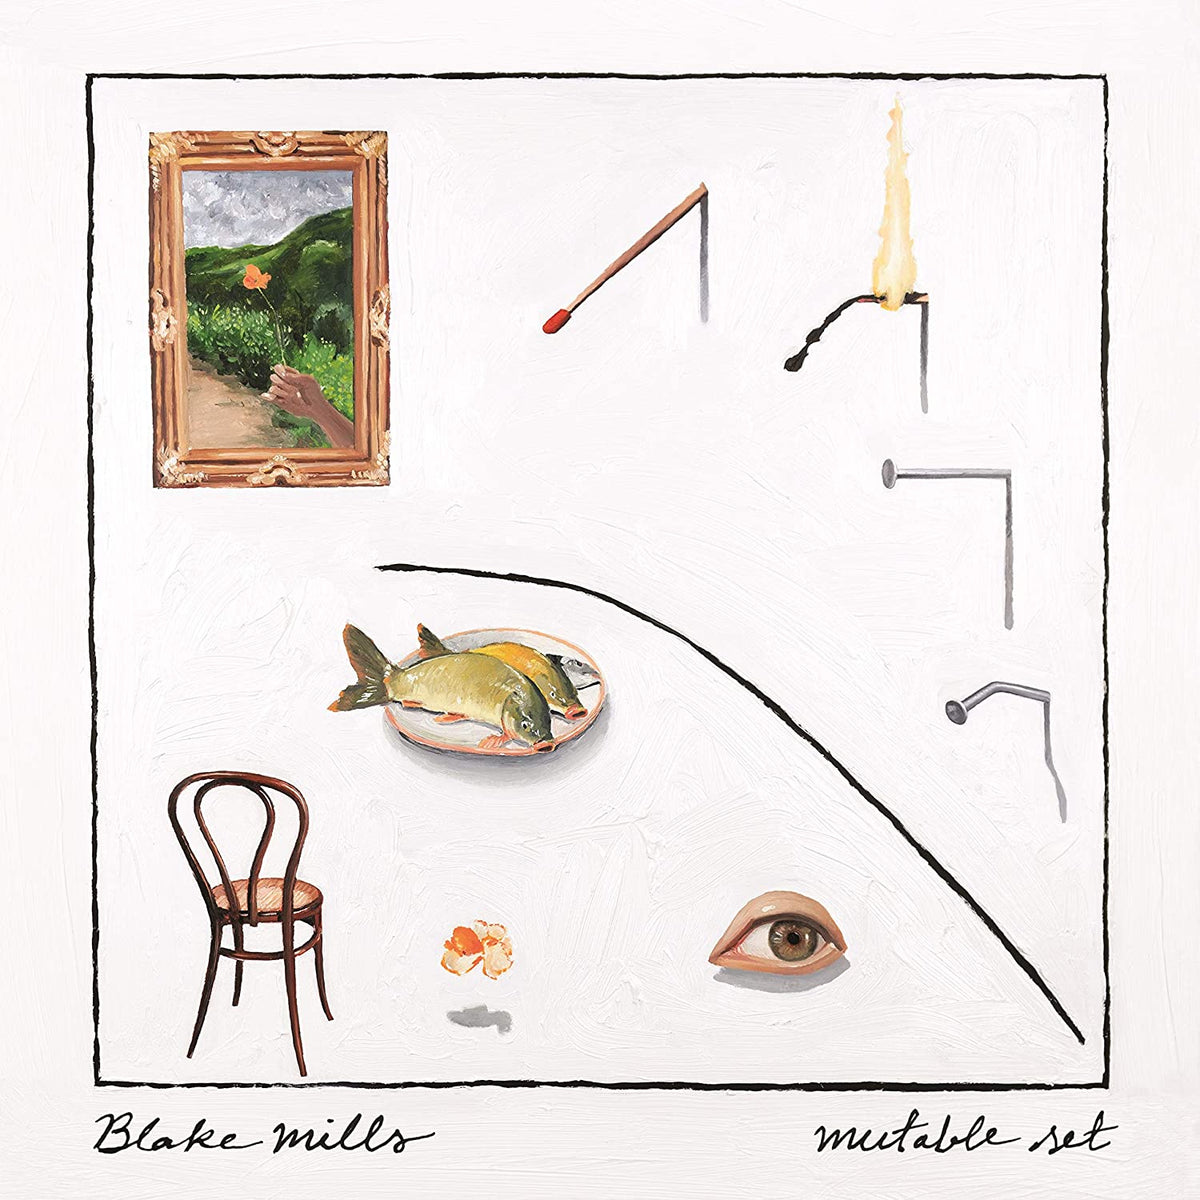 Blake Mills - Mutable Set